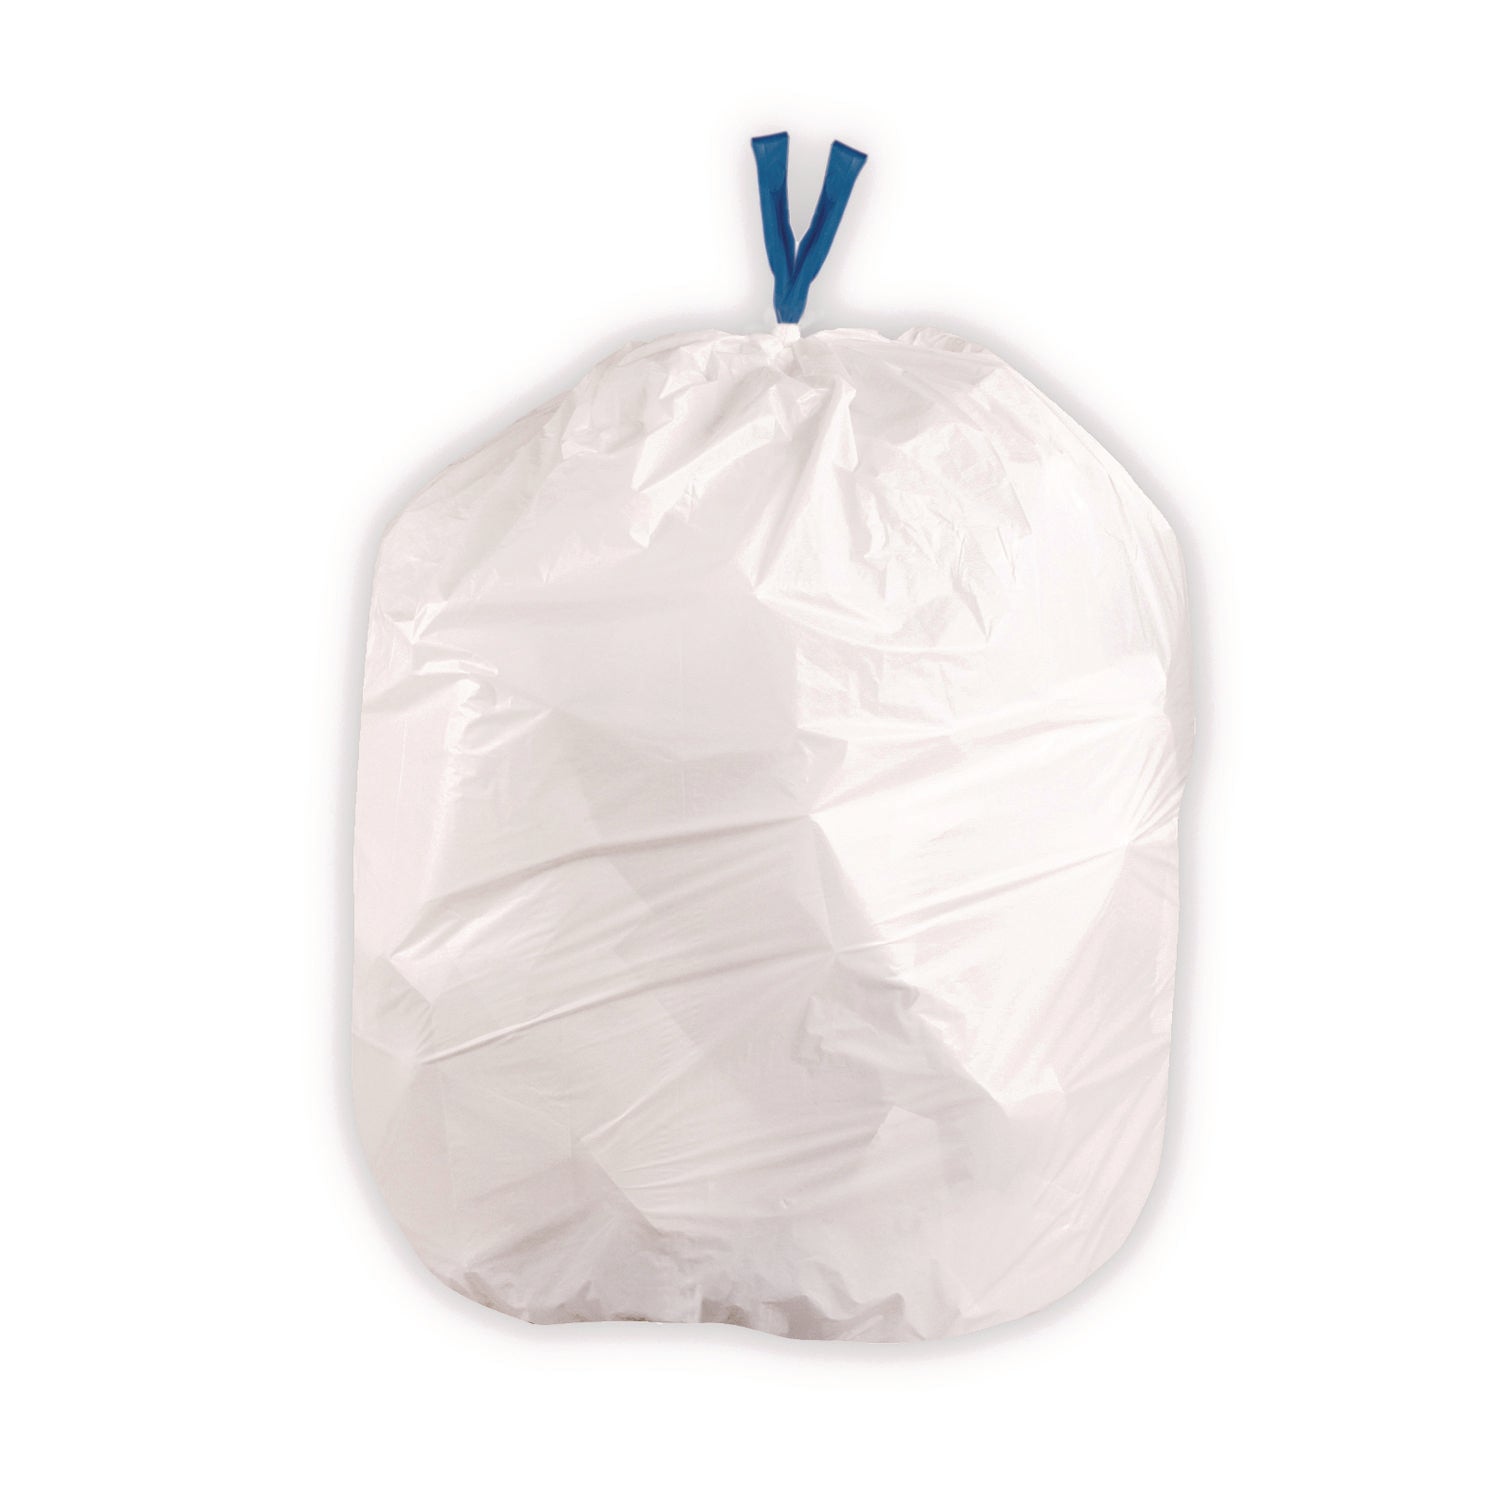 Drawstring Trash Bags, 13 gal, 0.8 mil, 24" x 28", White, 40 Bags/Roll, 2 Rolls/Box - 2